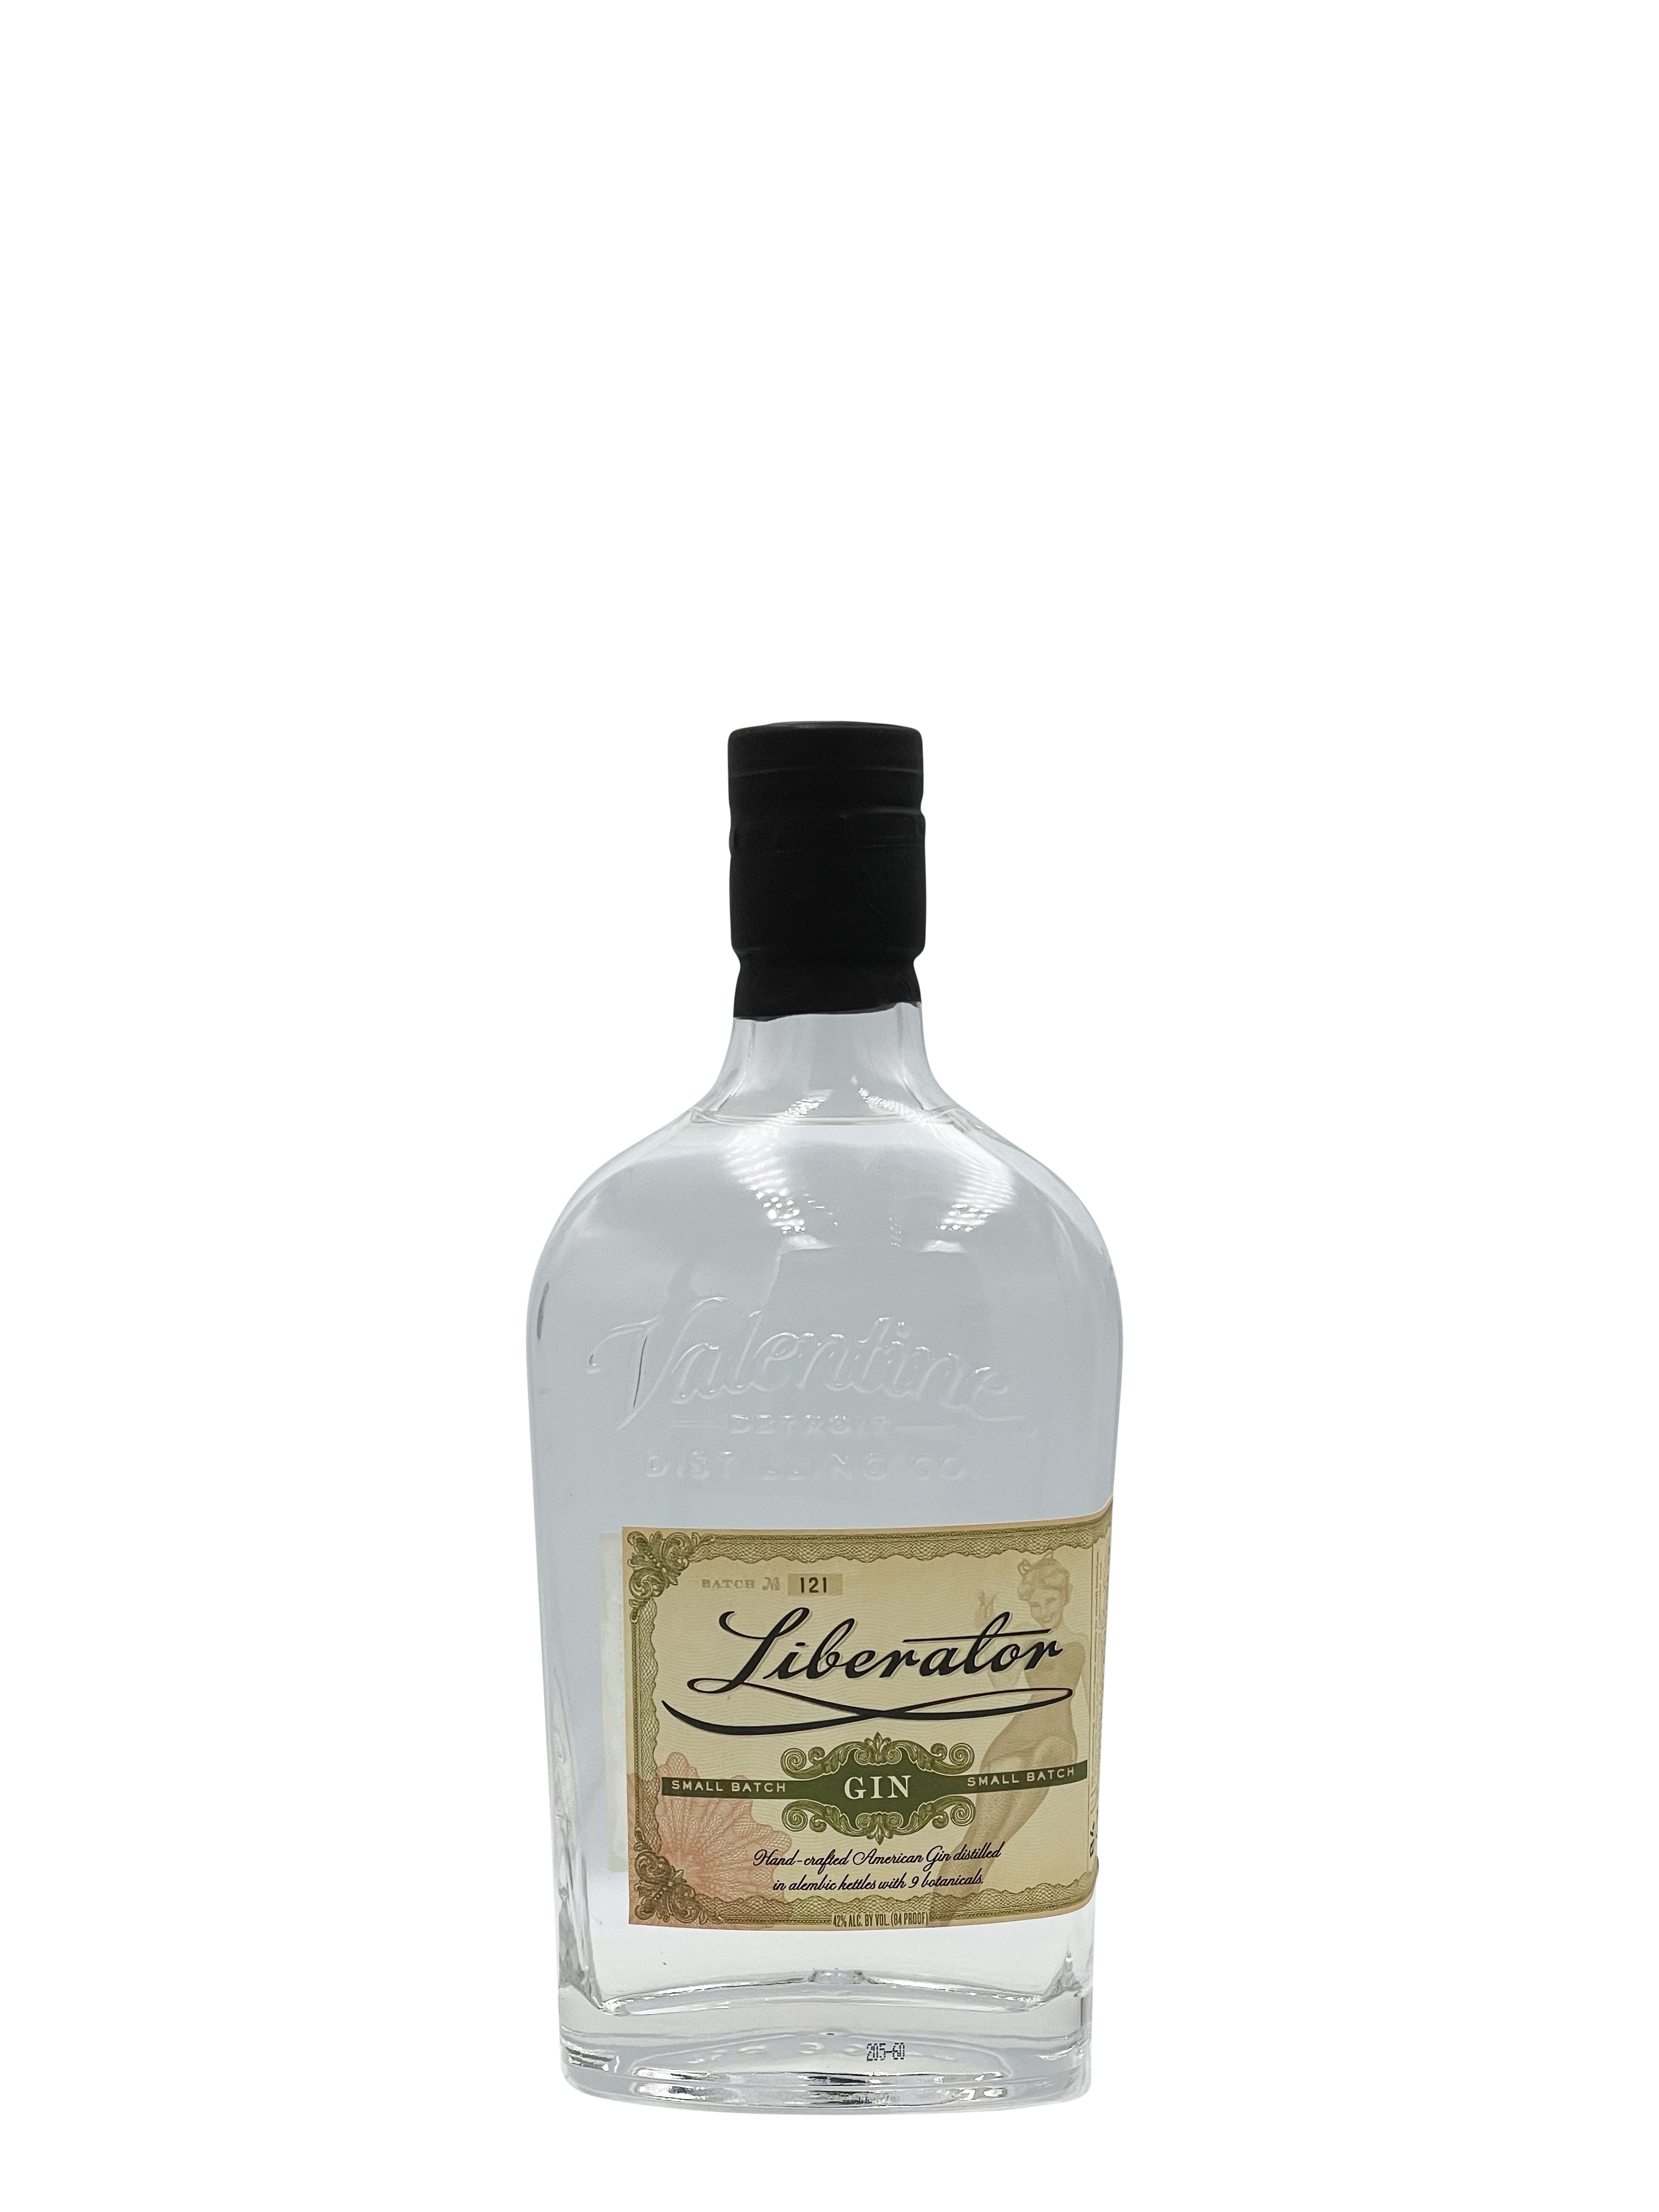 Valentine Distilling Co. "Liberator" Gin